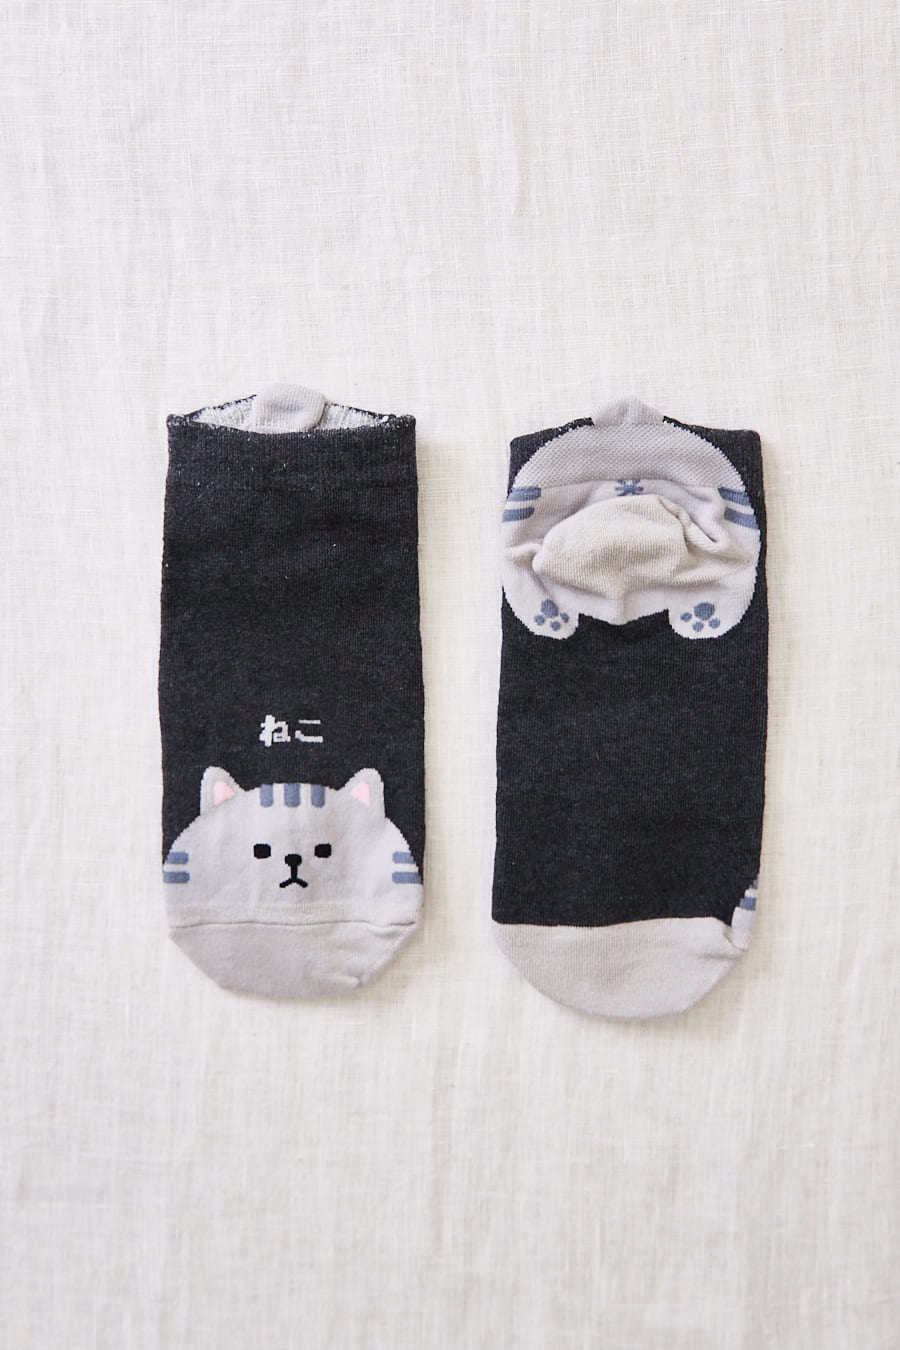 chaussettes japonaises chat